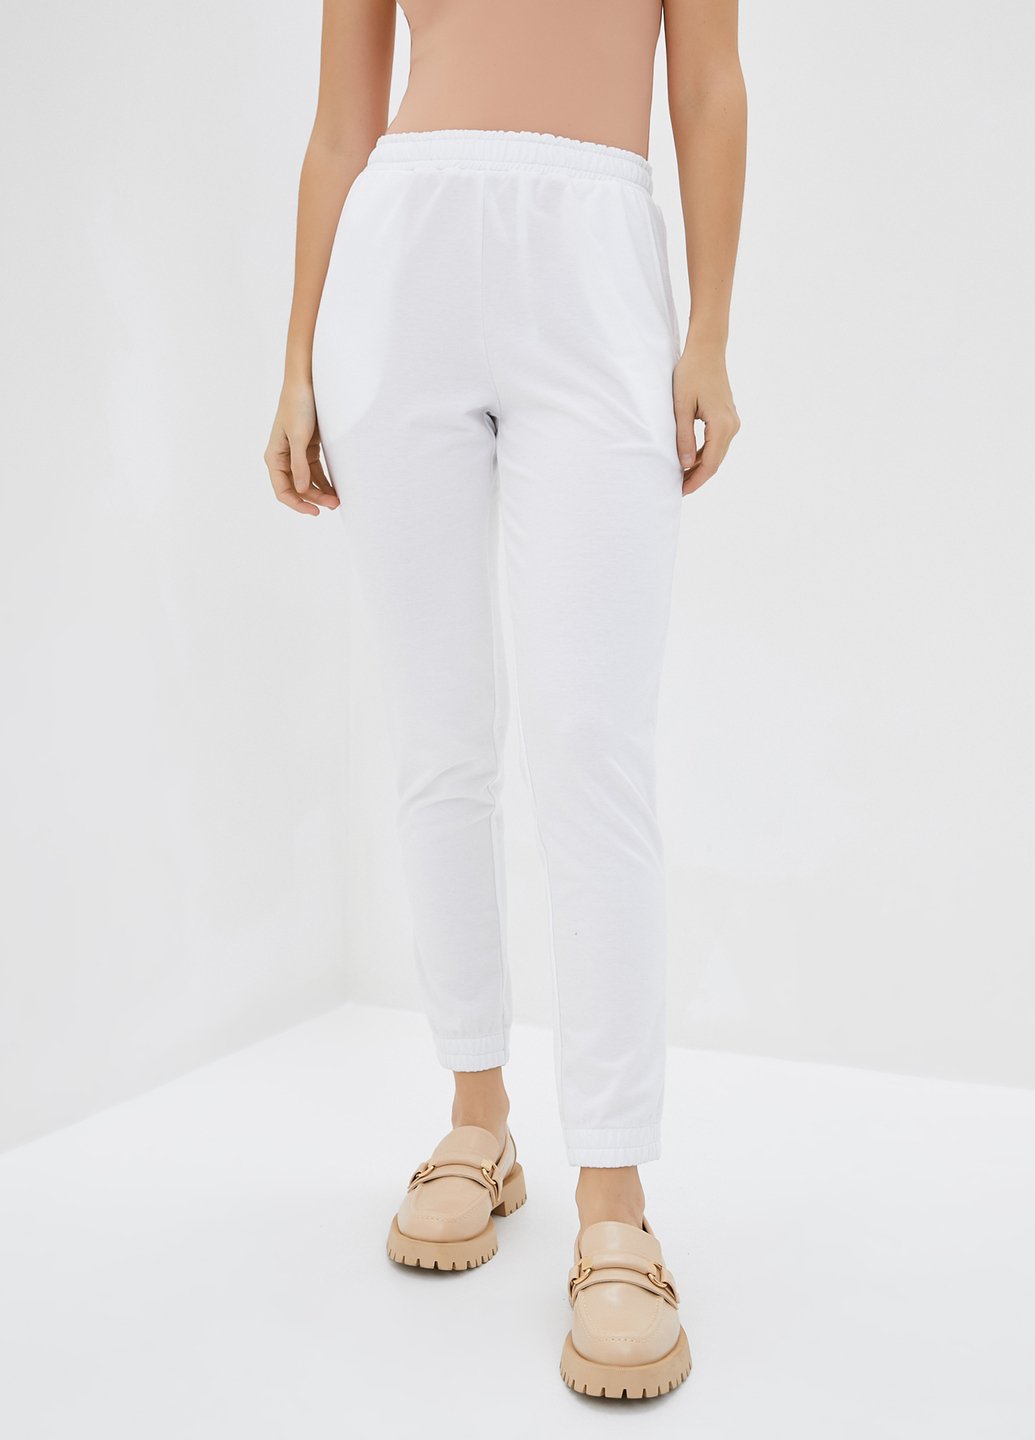 Купить Спортивные штаны женские Merlini Сити 600000056 - Белый, 42-44 в интернет-магазине